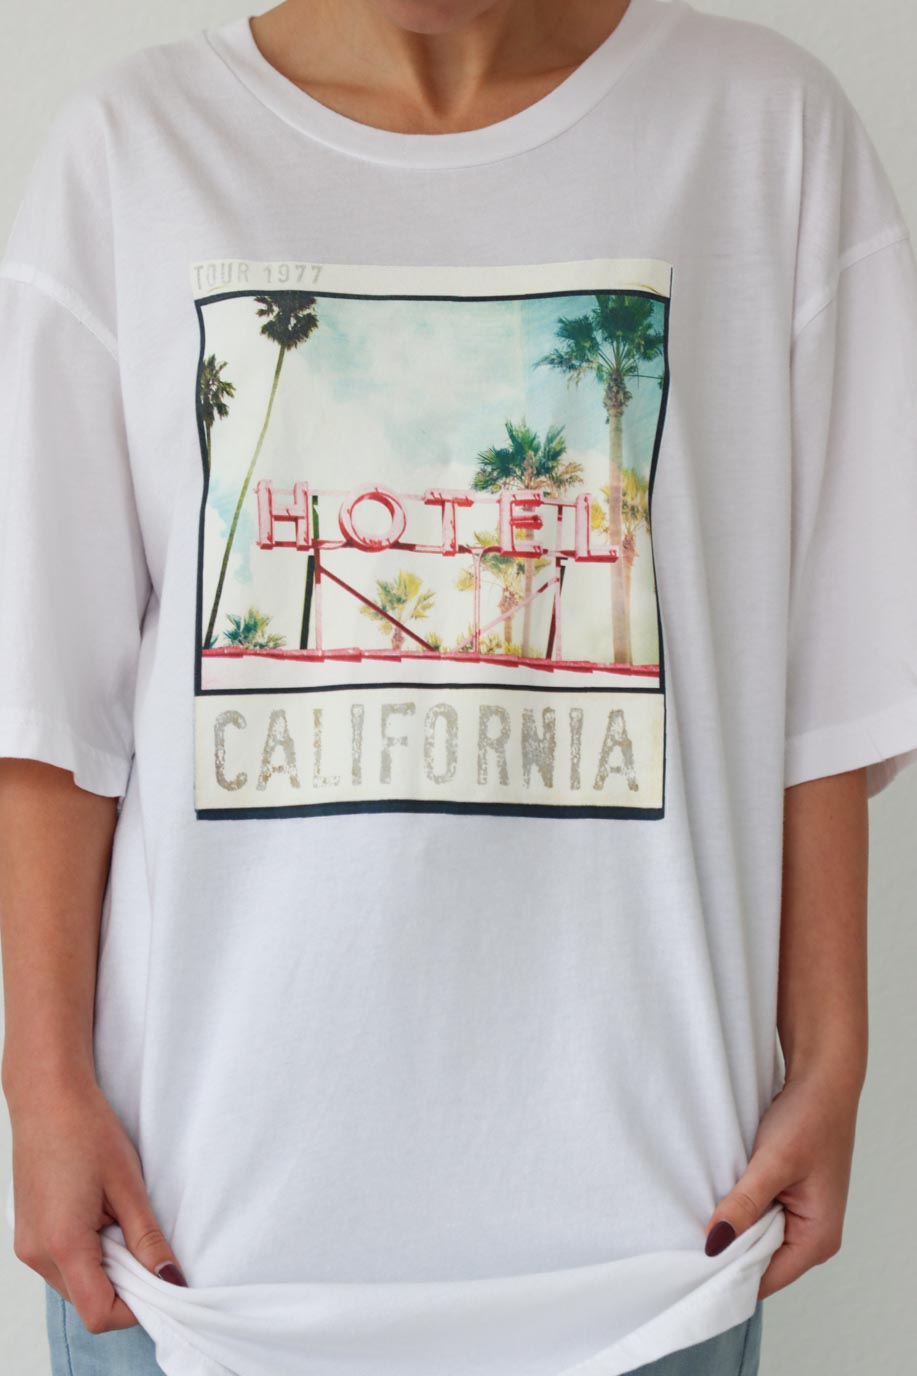 girl wearing white oversized "Hotel California" graphic t-shirt